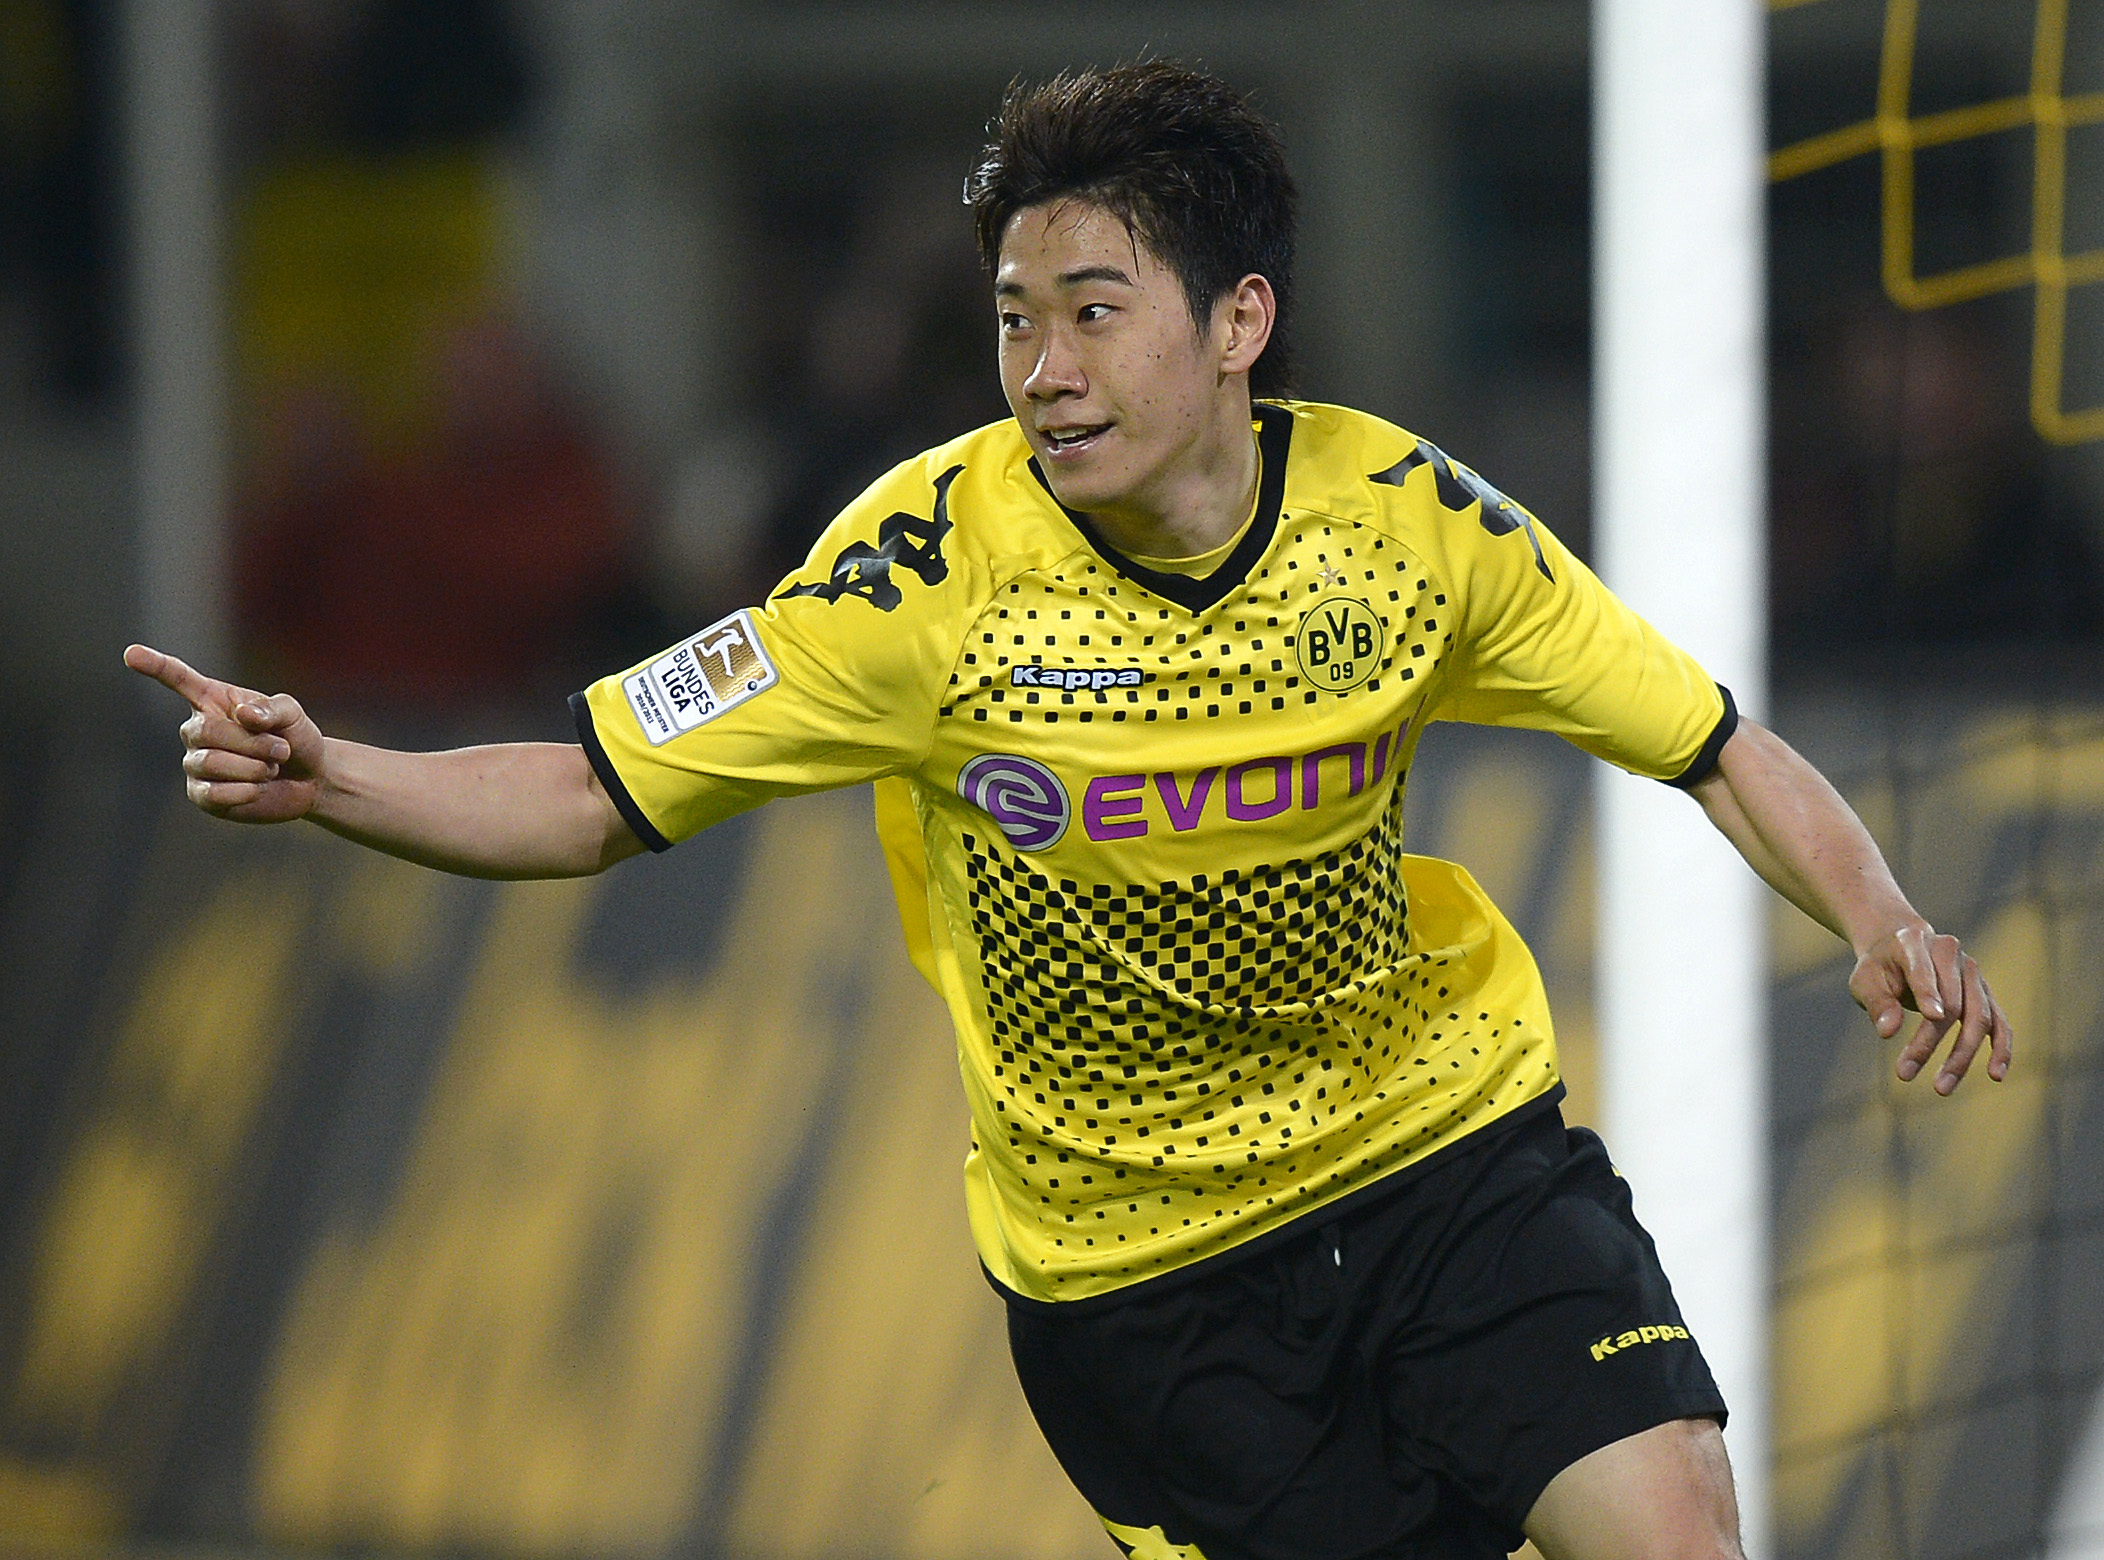 4. Shinji Kagawa, 23, från Dortmund till Manchester United. Den kvicke japanen har varit briljant i Bundesliga. Alex Ferguson tror att han kan ta över efter Paul Scholes.